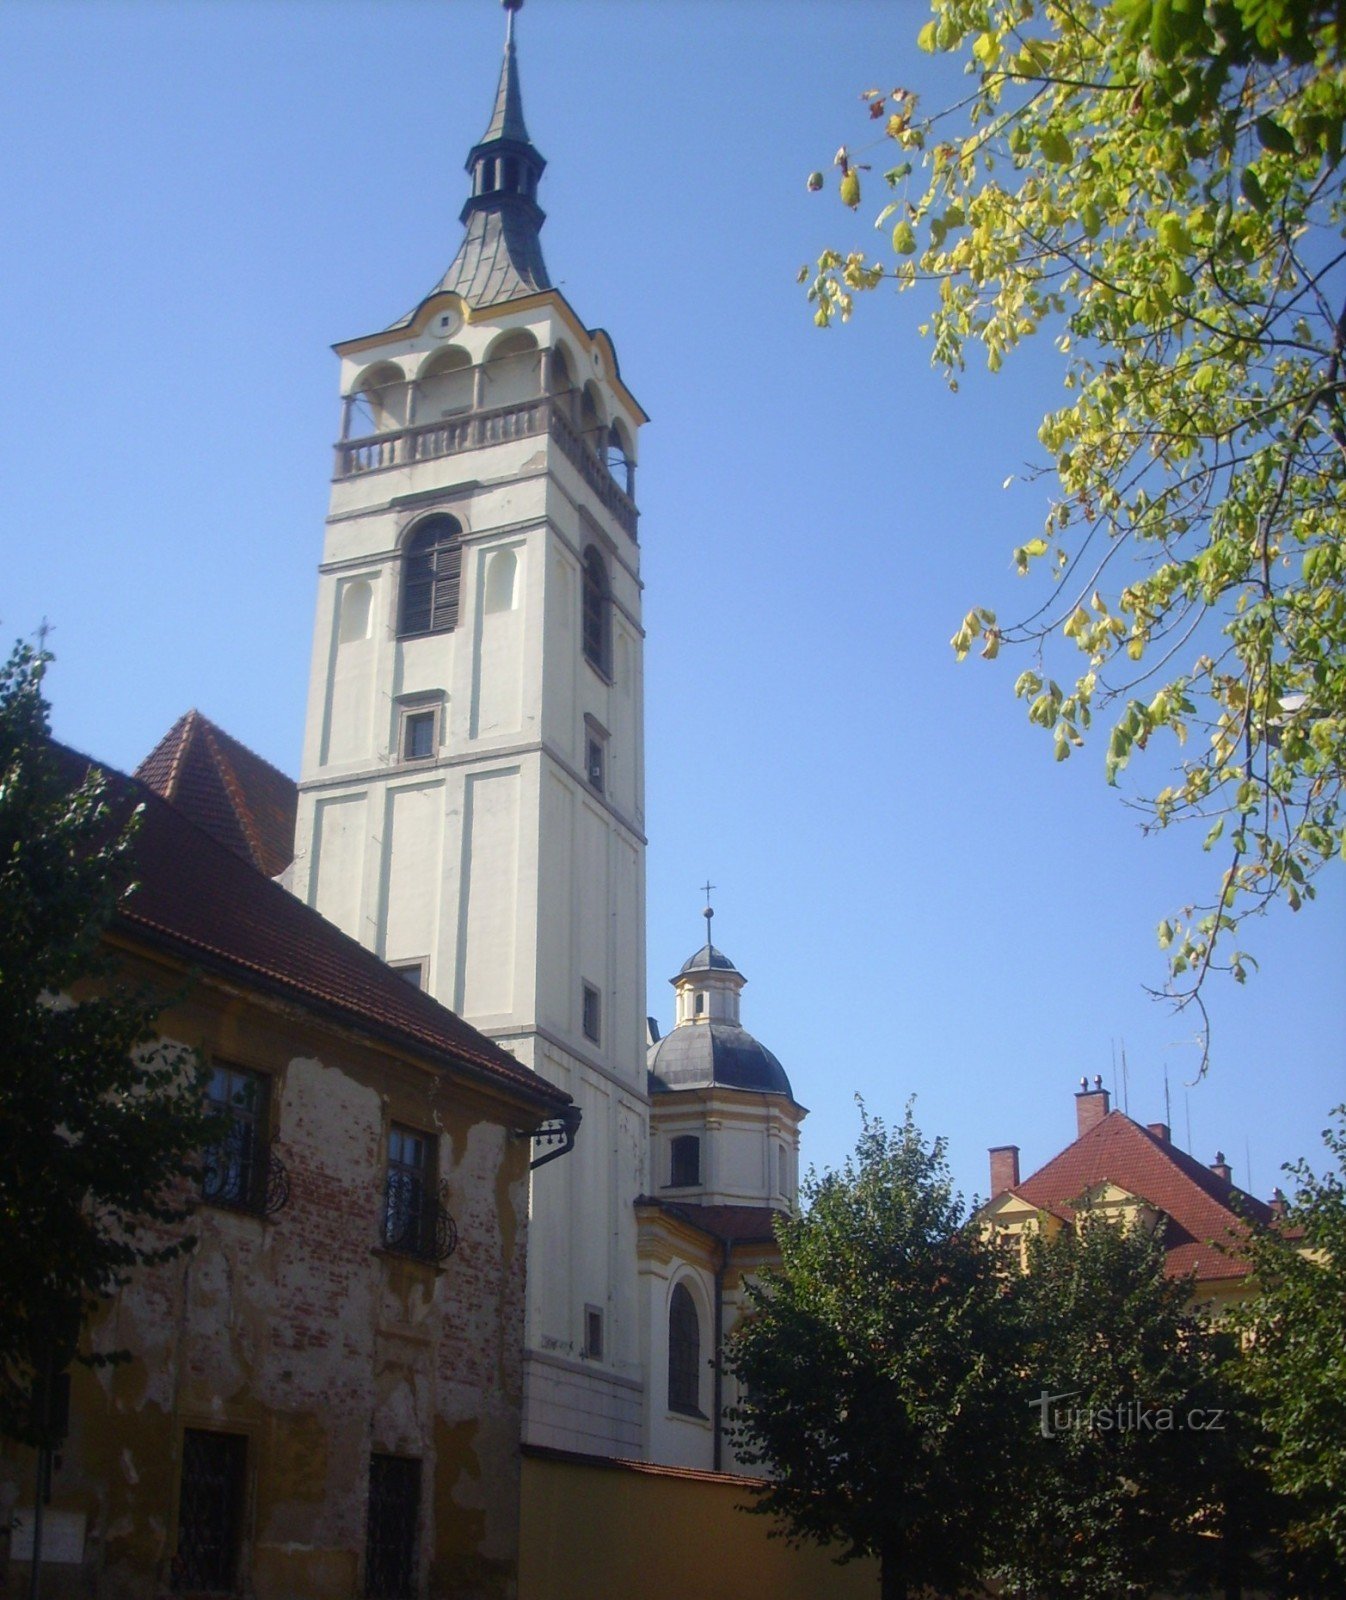 Lipník - la tour de l'église de St. Fr. Serafínský à côté du parc